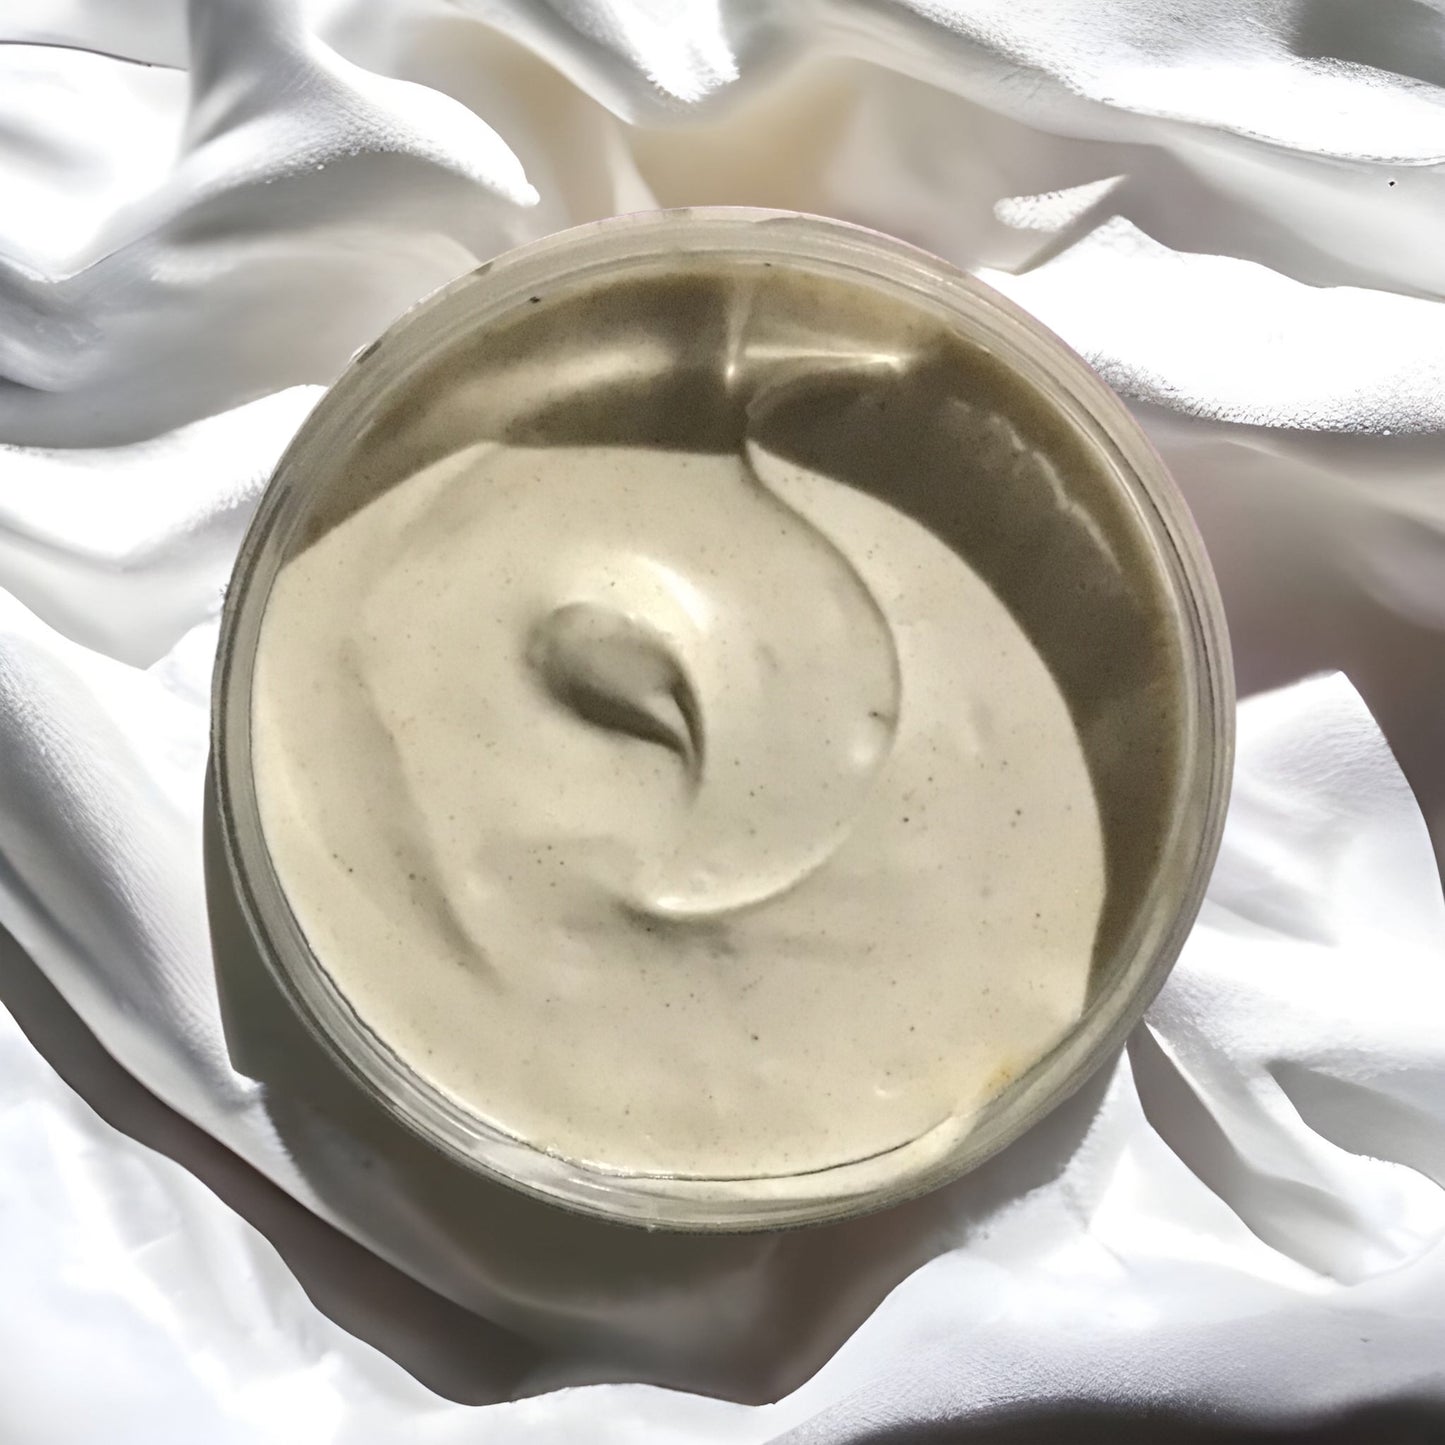 Crème bazouka enlargement pour homme 100% naturel/ Bazooka cream for men 100% Natural